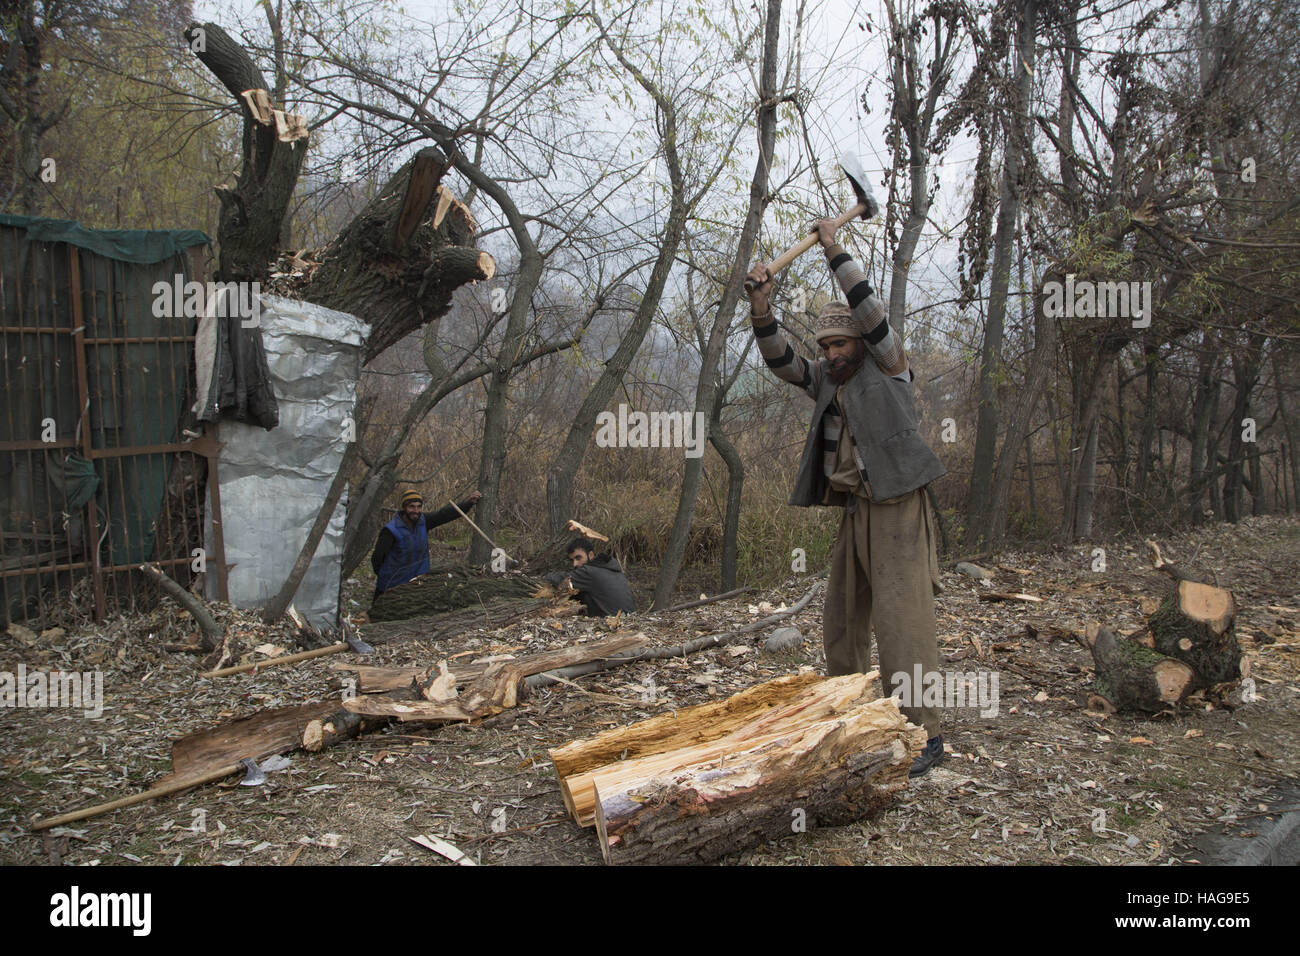 Srinagar, au Cachemire sous contrôle indien. 30Th Nov, 2016. Hacher les hommes du cachemire pour bois de chauffage pendant l'hiver un jour froid de Srinagar, capitale d'été du Cachemire sous contrôle indien, le 30 novembre 2016. La température est demeurée au-dessous du point de congélation la nuit dans la plupart des régions du Cachemire sous contrôle indien. © Javed Dar/Xinhua/Alamy Live News Banque D'Images